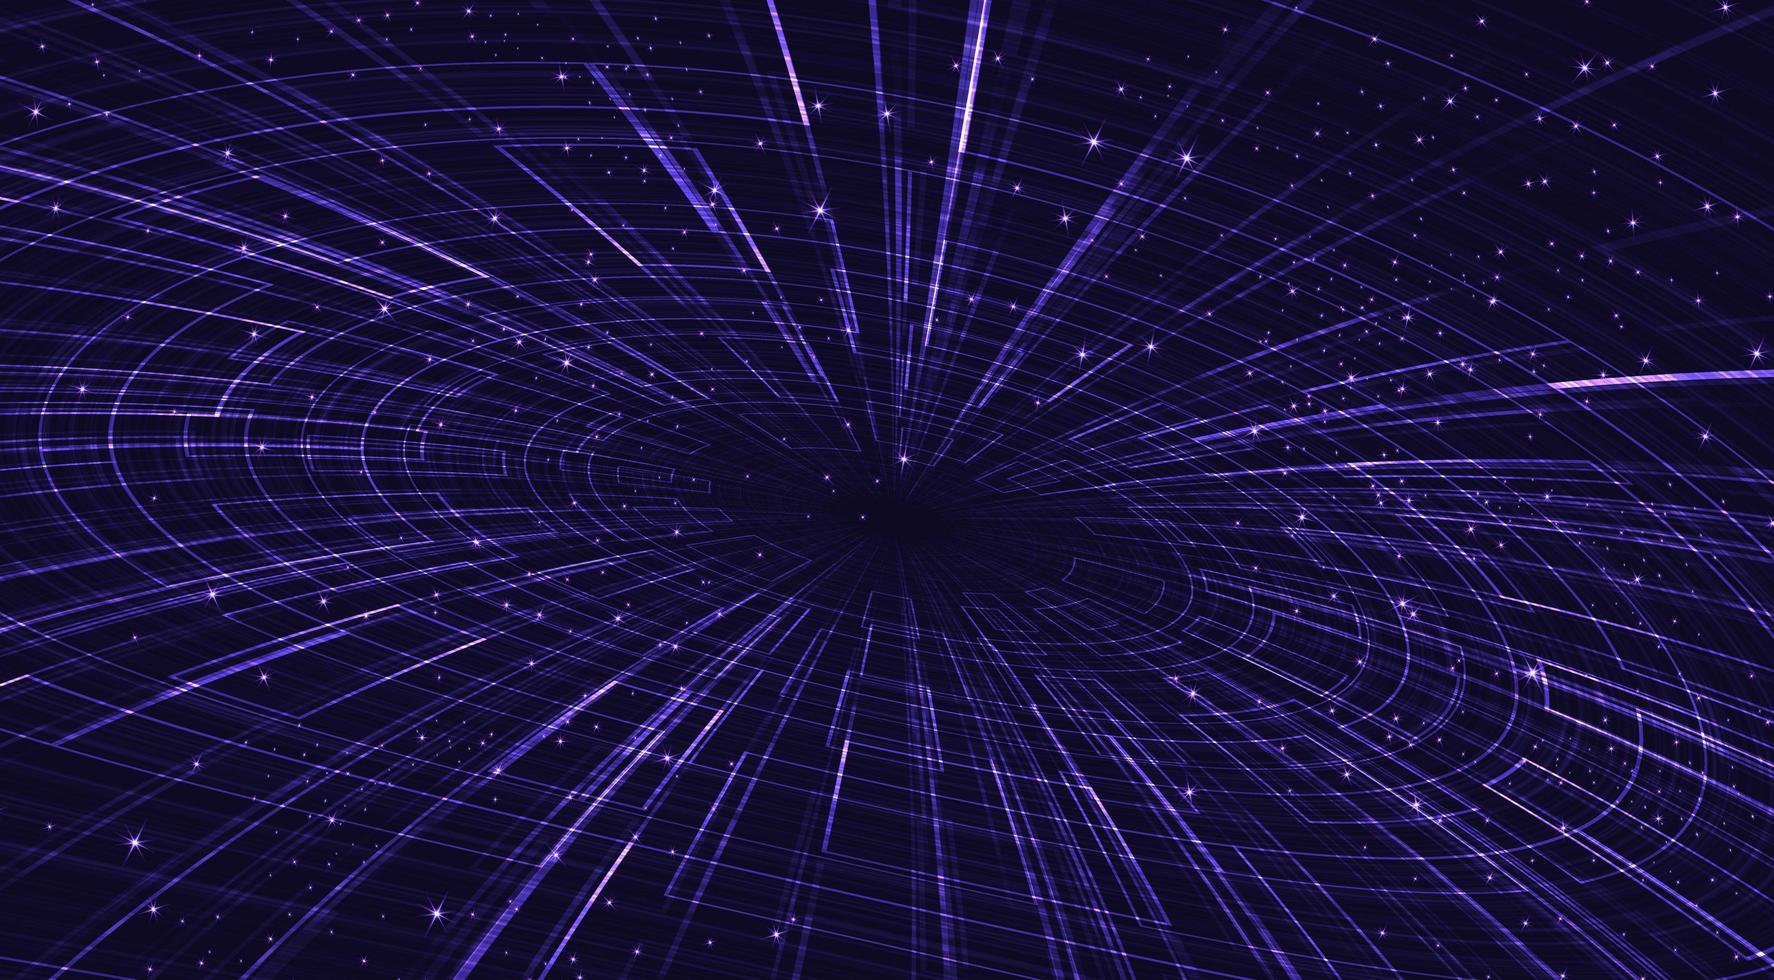 Agujero negro ultravioleta con galaxia espiral sobre fondo cósmico.Diseño de concepto de física y planeta, ilustración vectorial. vector